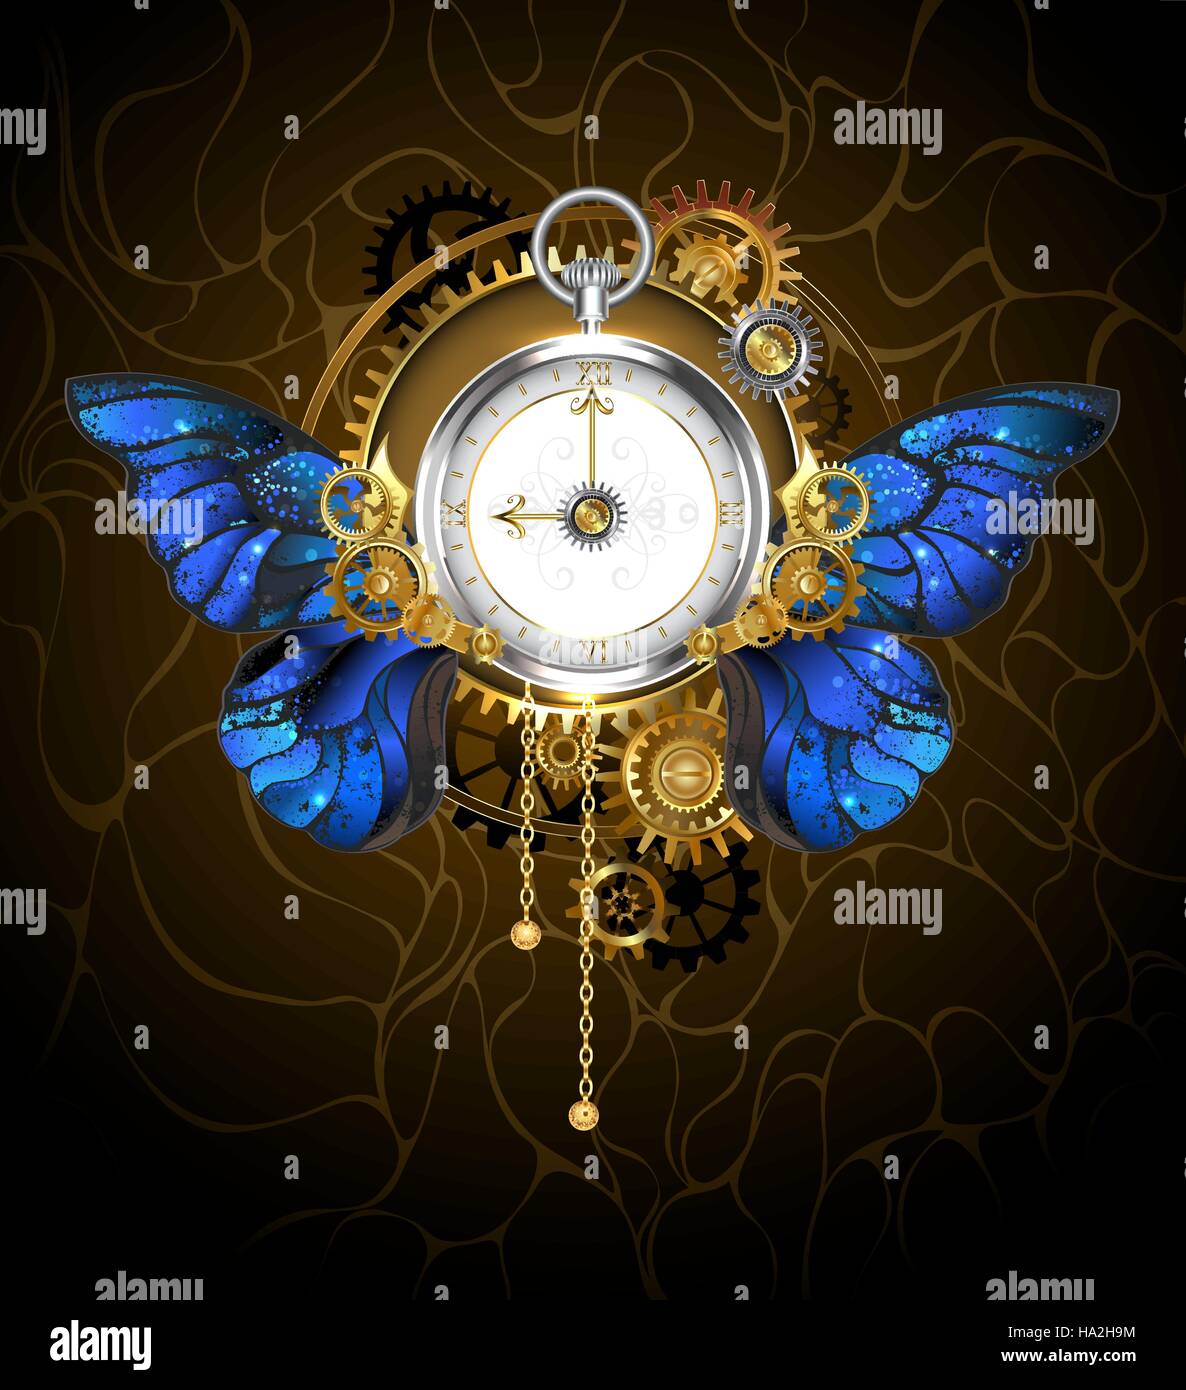 Rund um die Uhr im Stil der Steampunk mit blauen Schmetterling Flügel Morpho, Zifferblatt mit goldenen römischen Ziffern, mit Gold, Silber und Messing verziert Stock Vektor